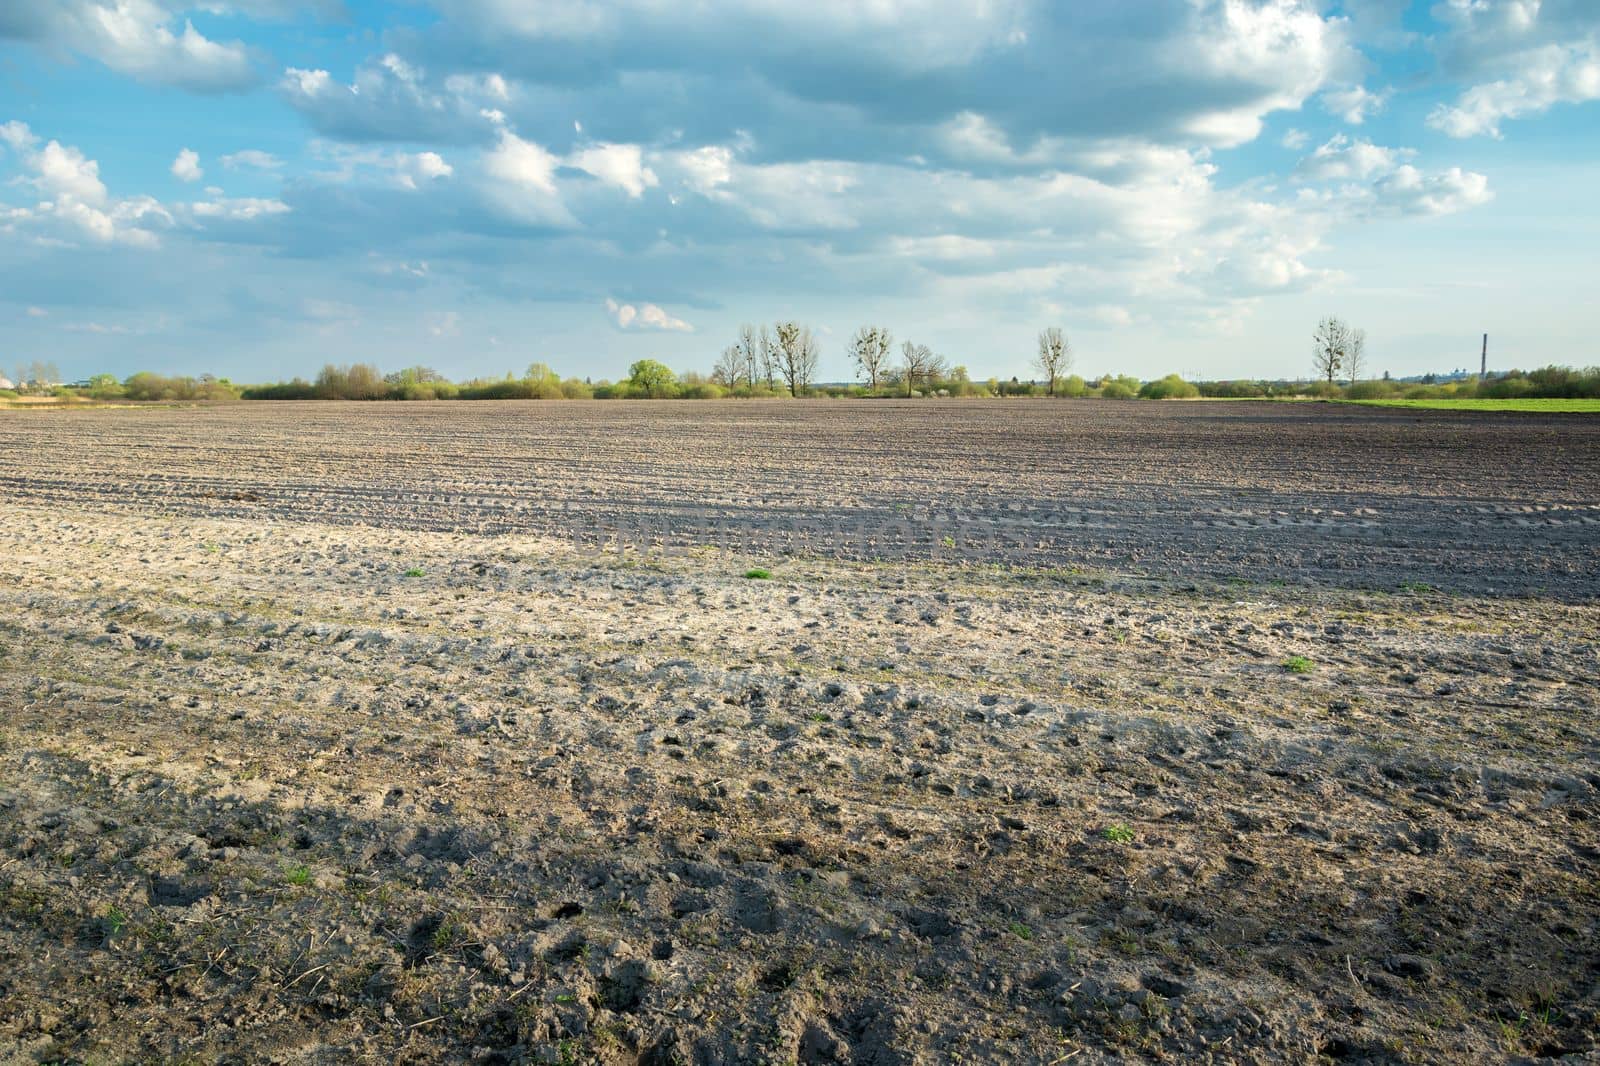 Wild animal tracks in a plowed field, rural spring view by darekb22